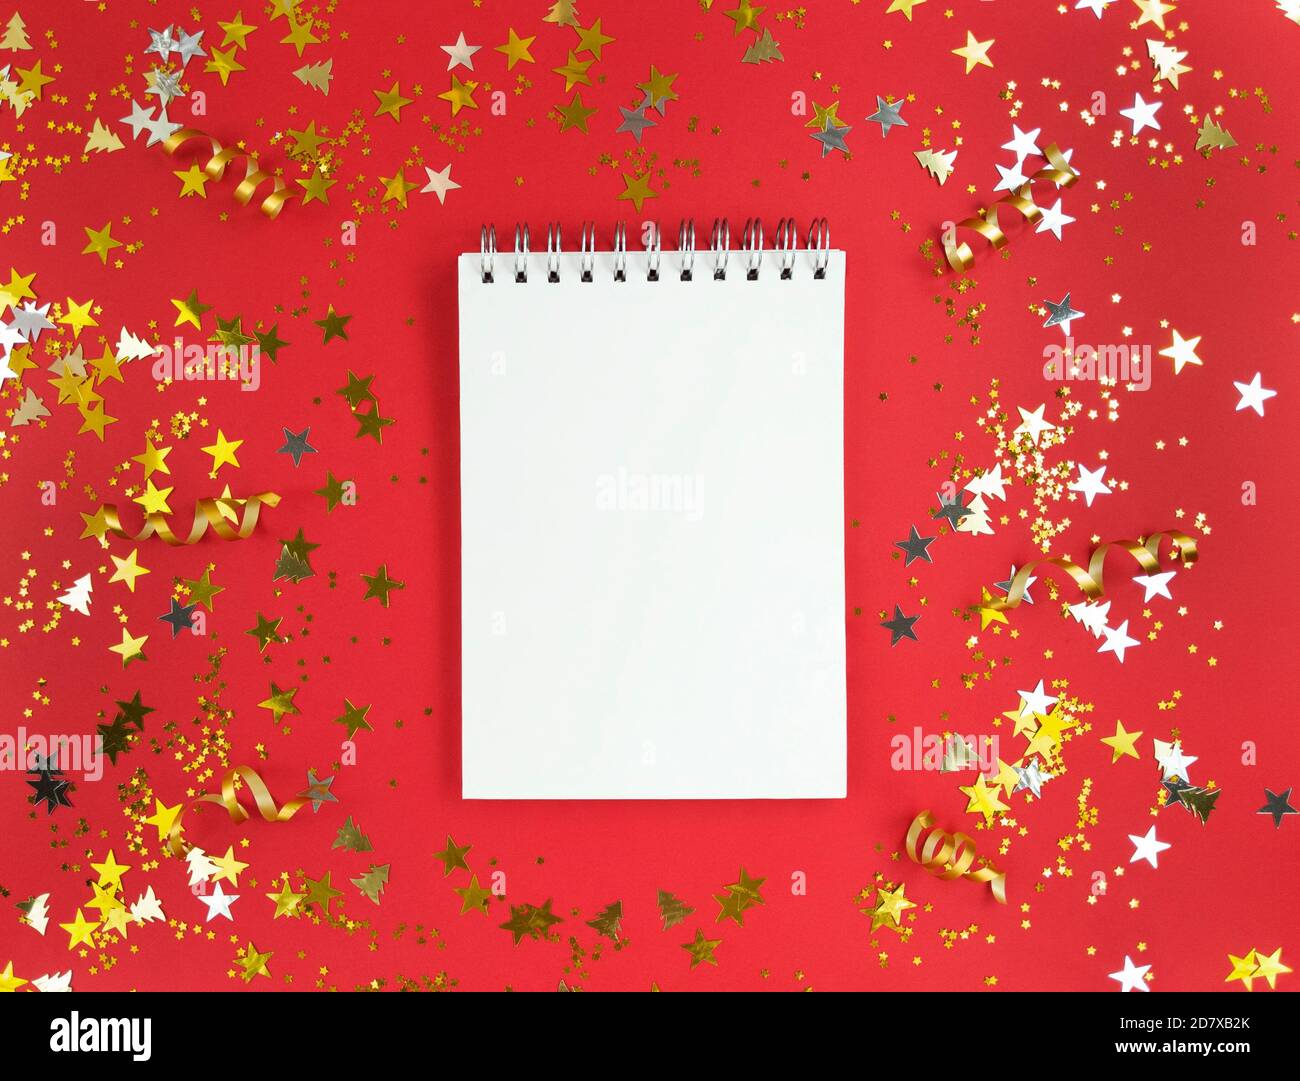 Foglio bianco di quaderno su sfondo rosso con confetti sparsi. Concetto di educazione alle vacanze. Foto di scorta. Foto Stock